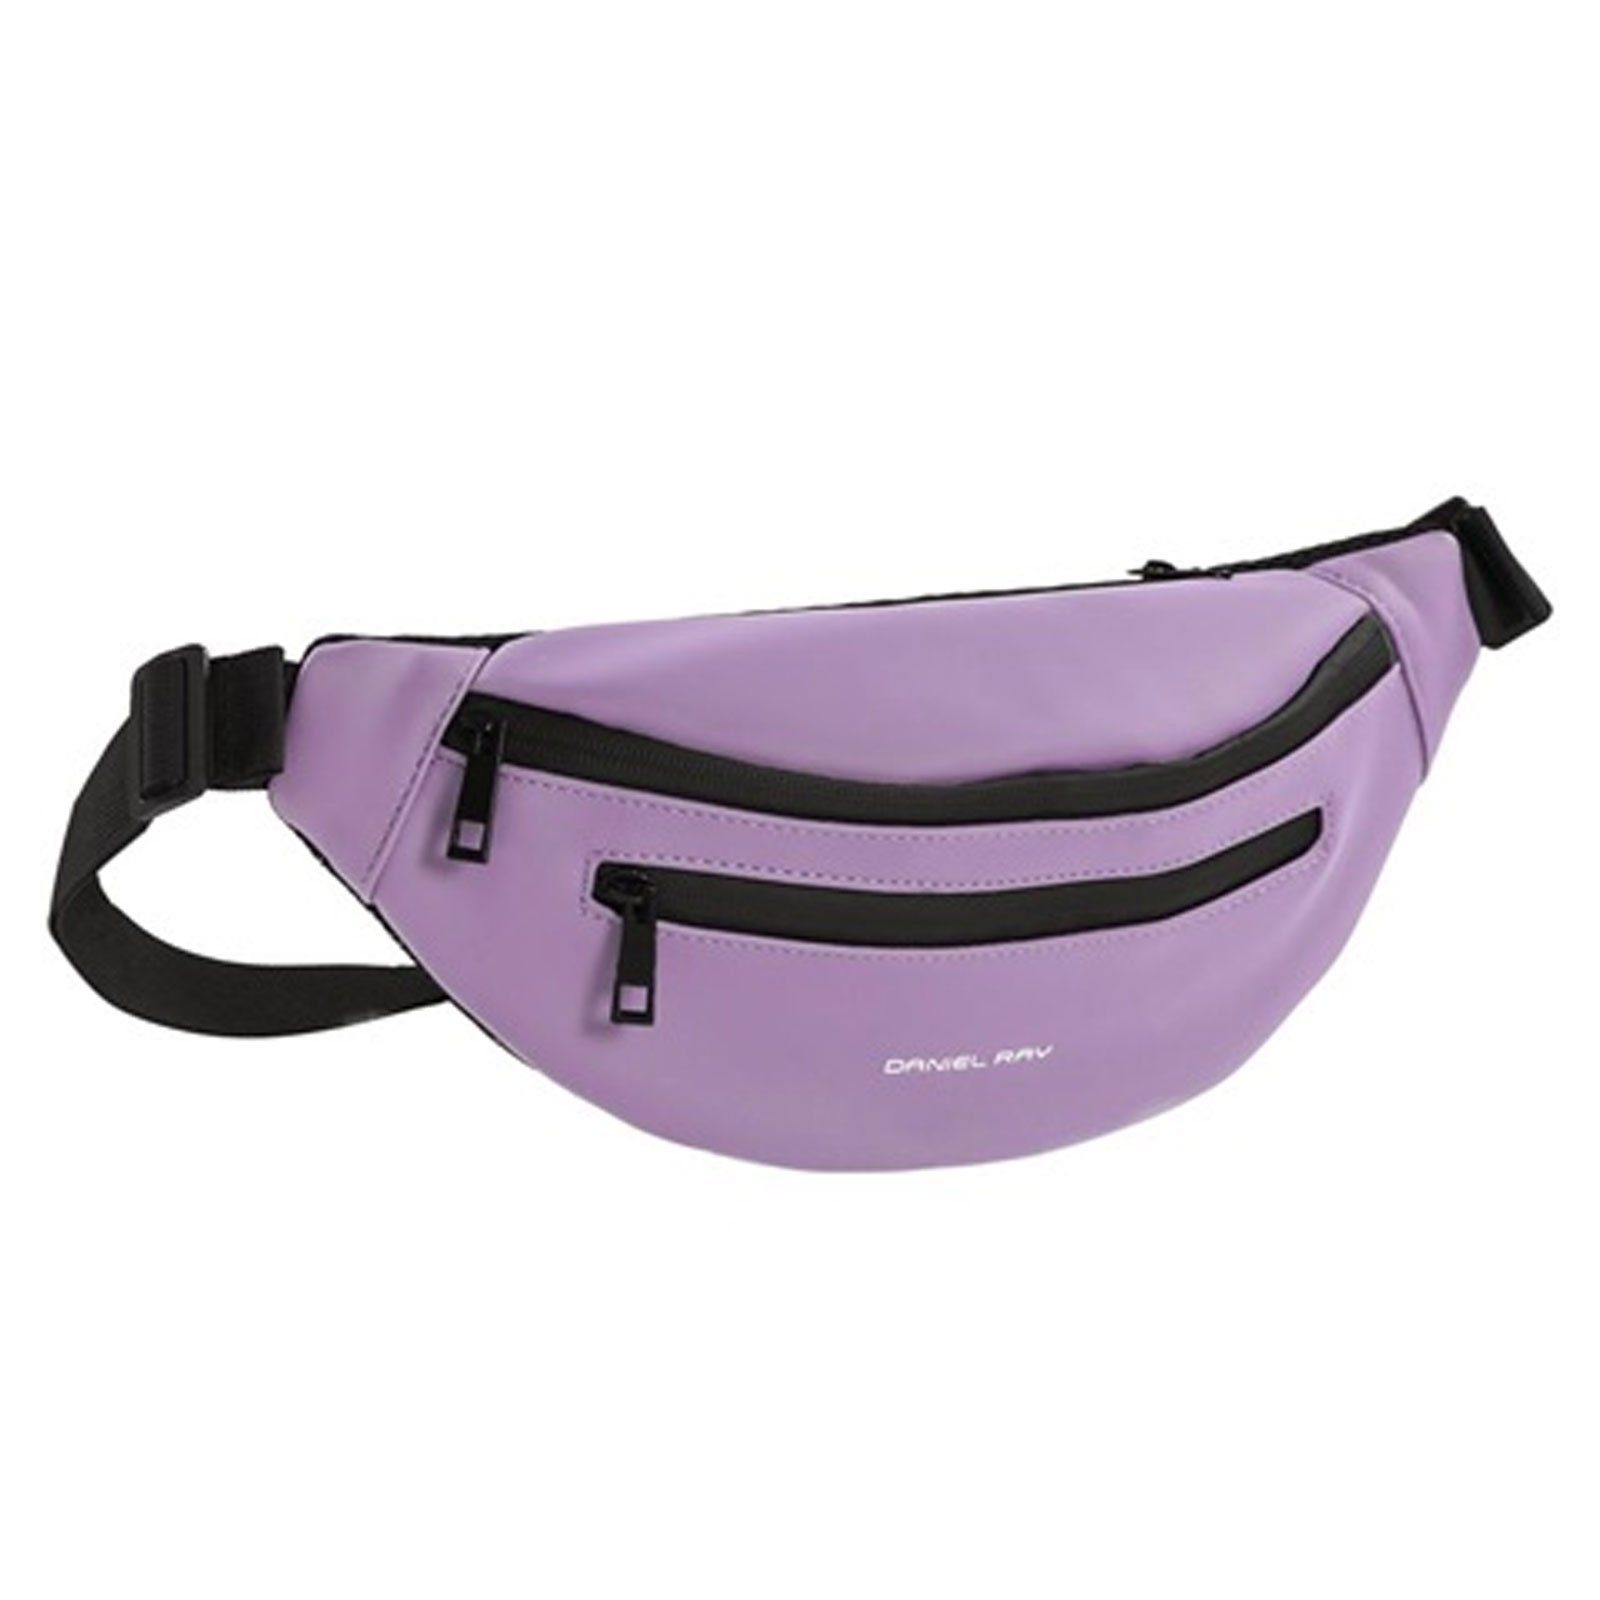 Daniel Ray Bauchtasche, Gürteltasche Mobiele in matter Optik PU-Hüfttasche Verstellbarer Bund soft purple (43)